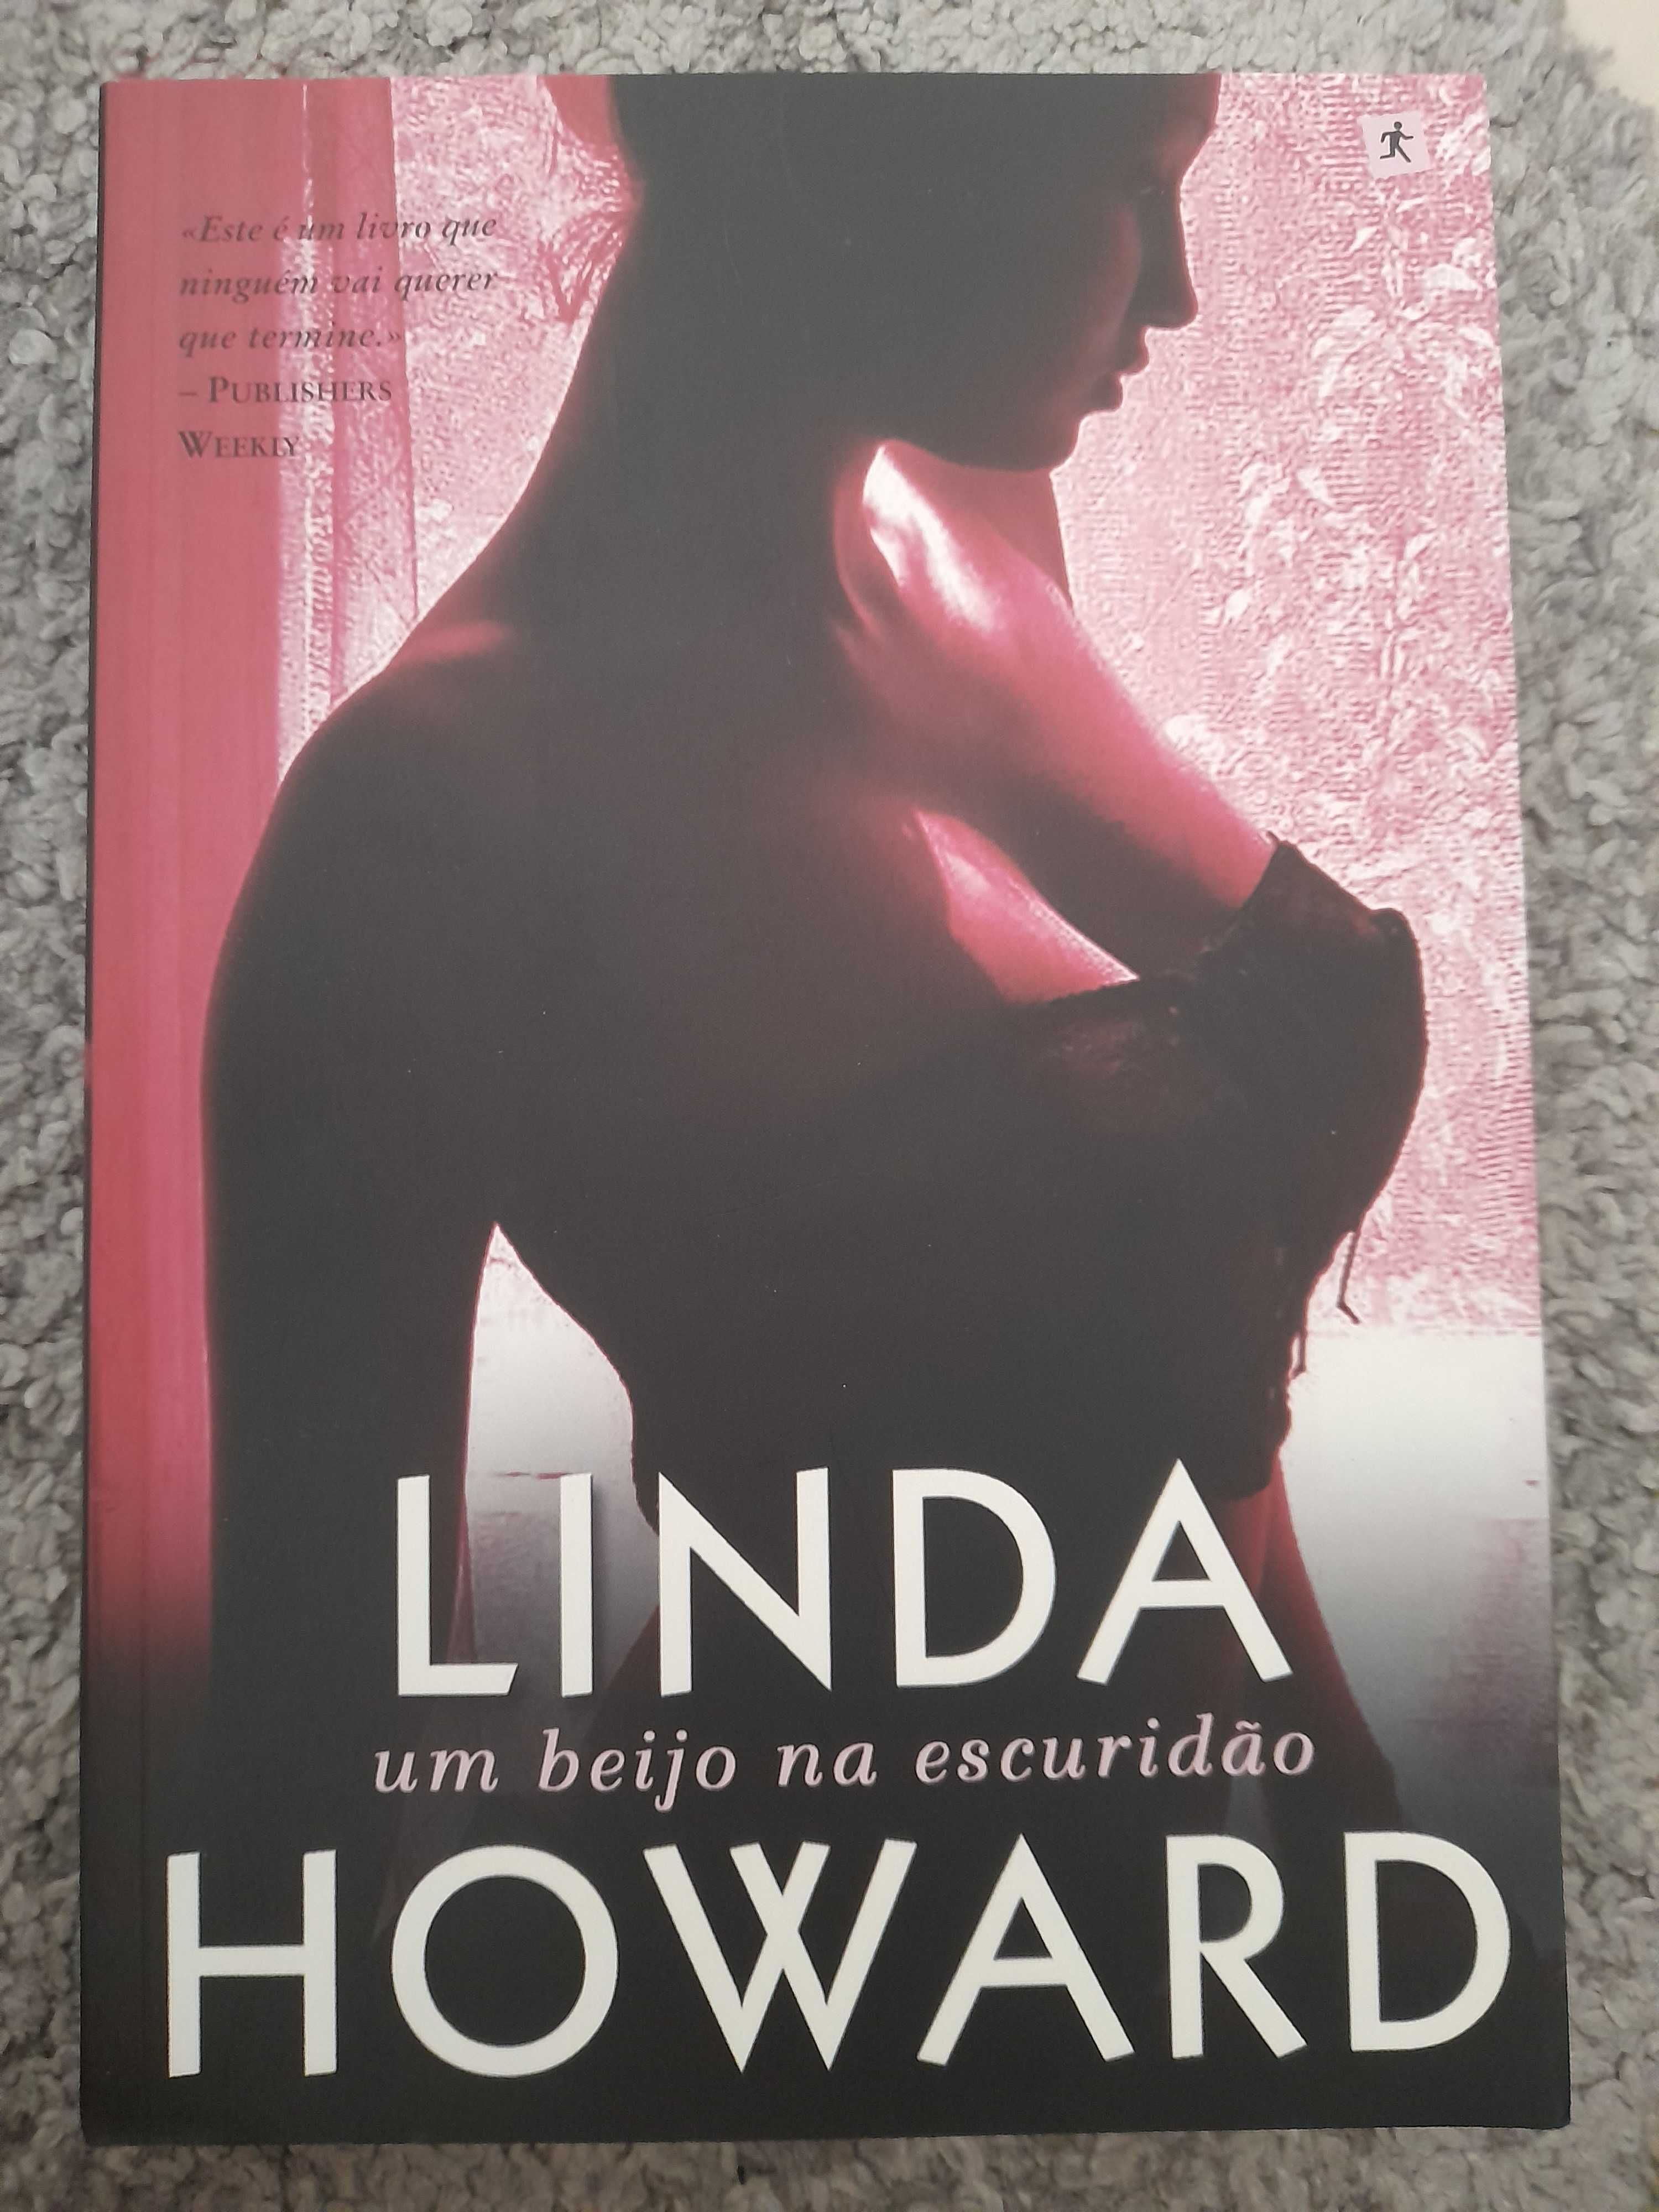 Livro "Um Beijo na escuridão" de Linda Howard